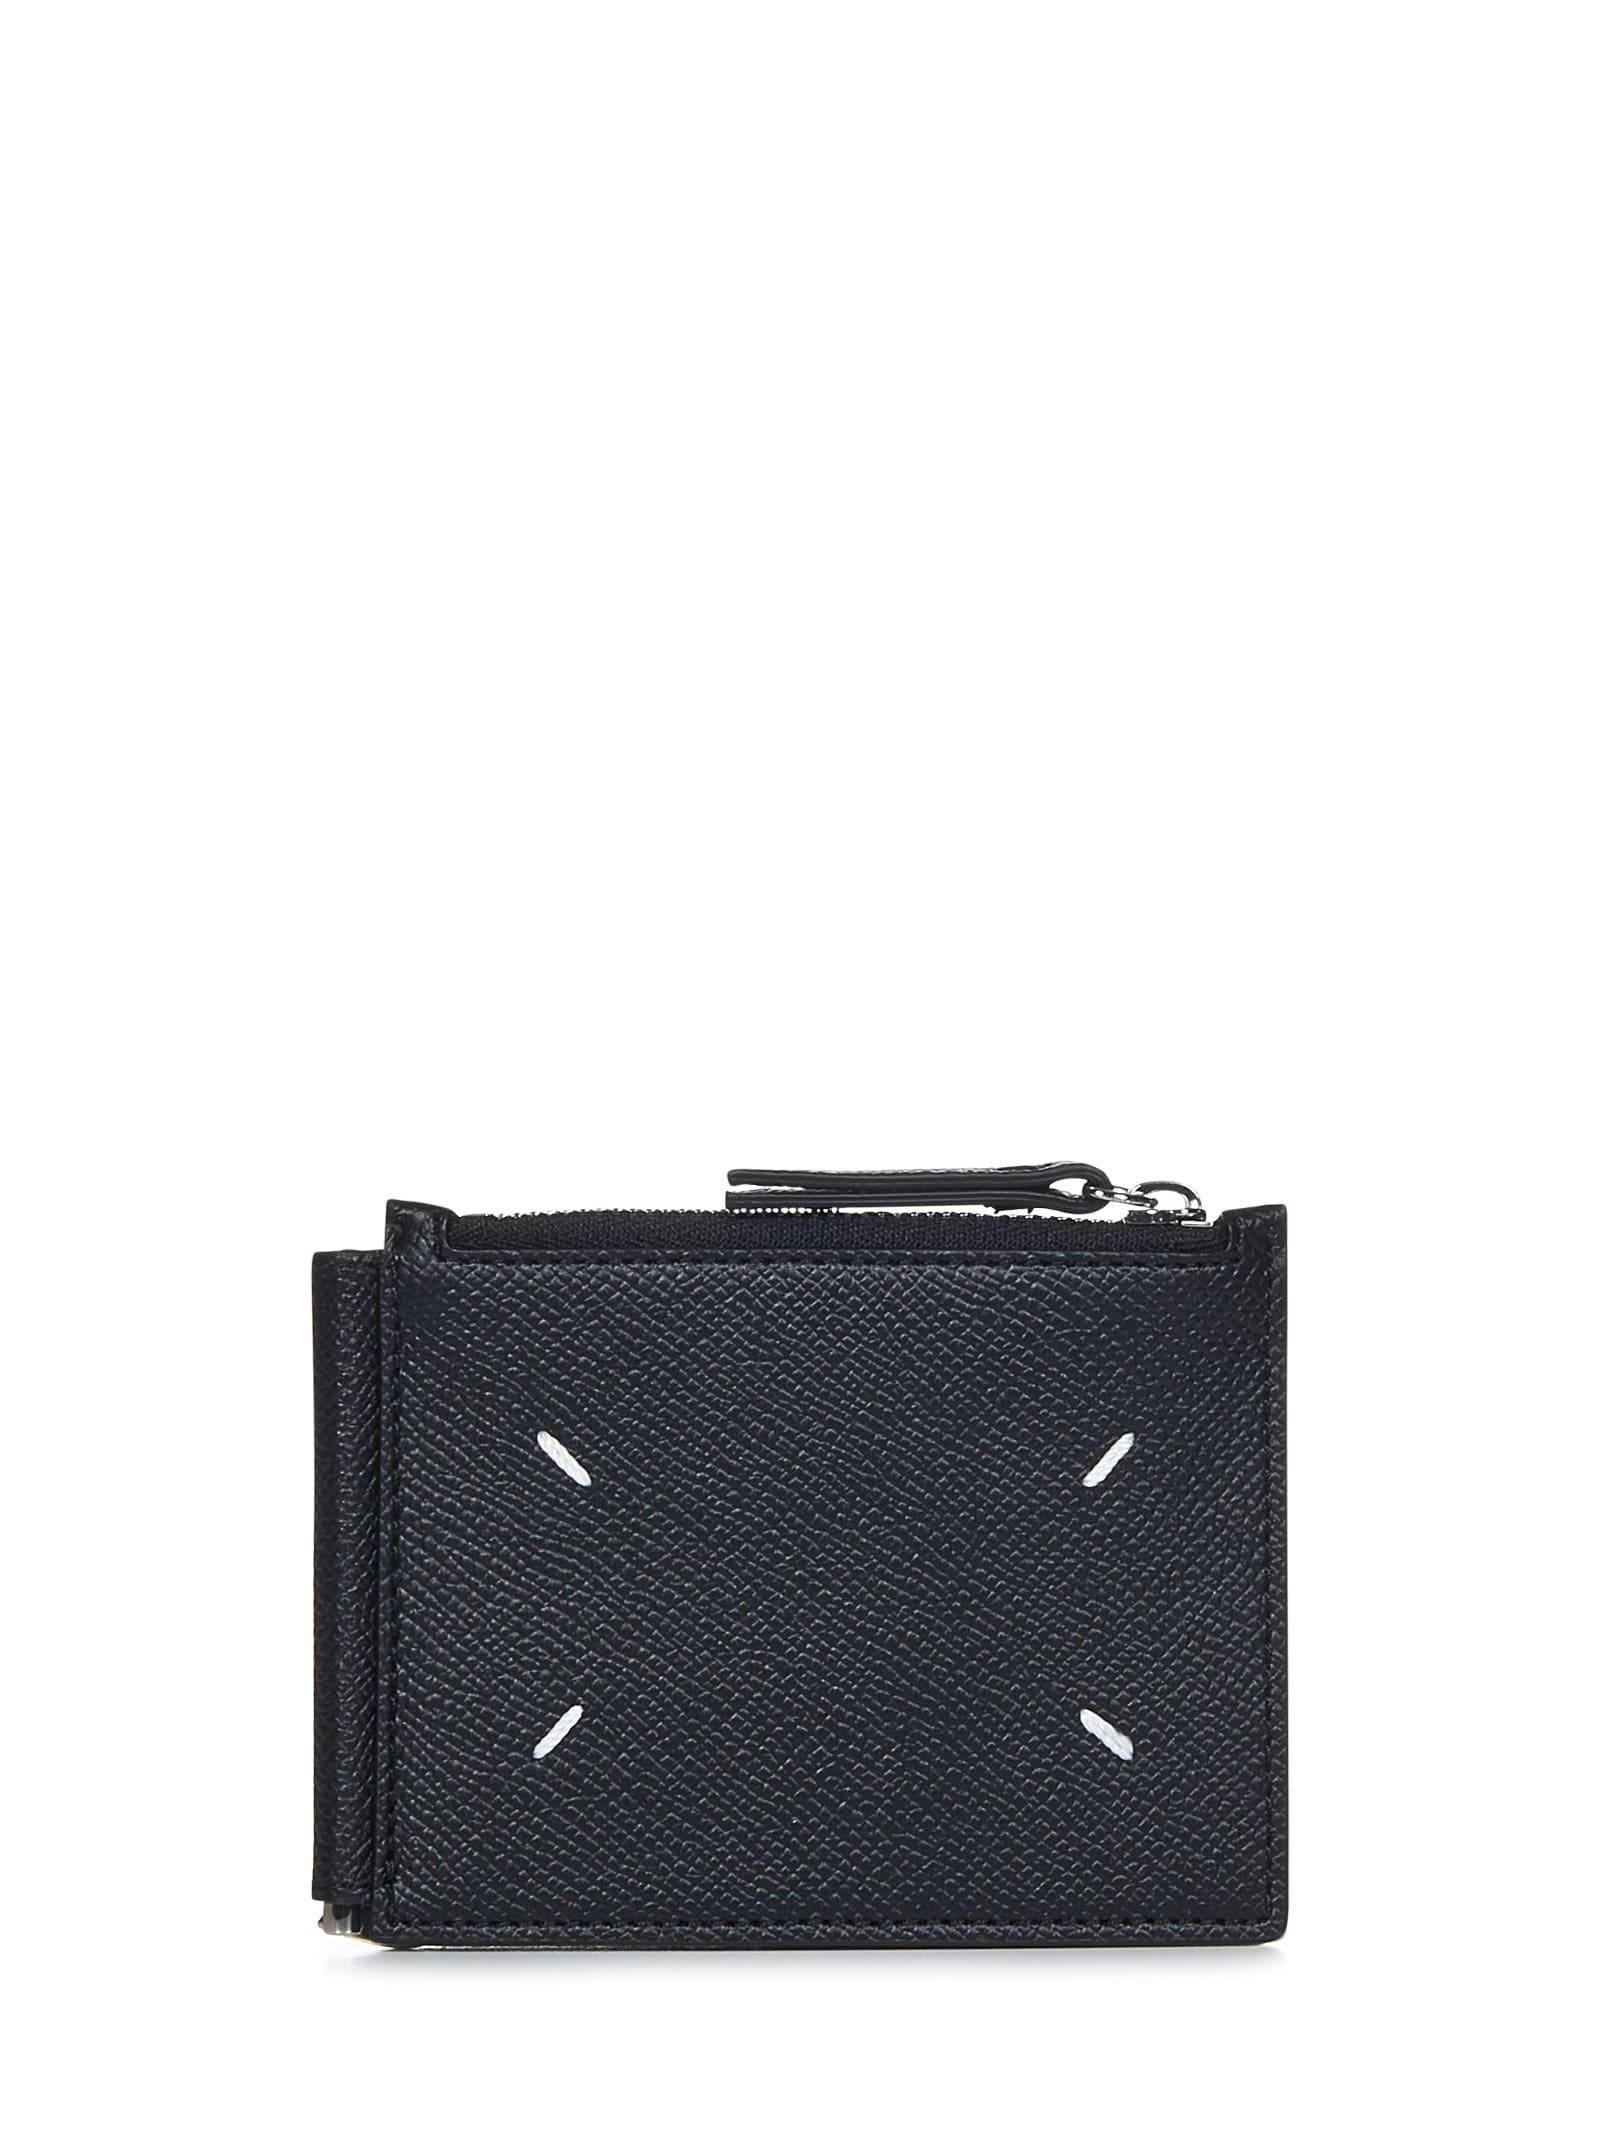 Maison Margiela Leather Wallet | Smart Closet